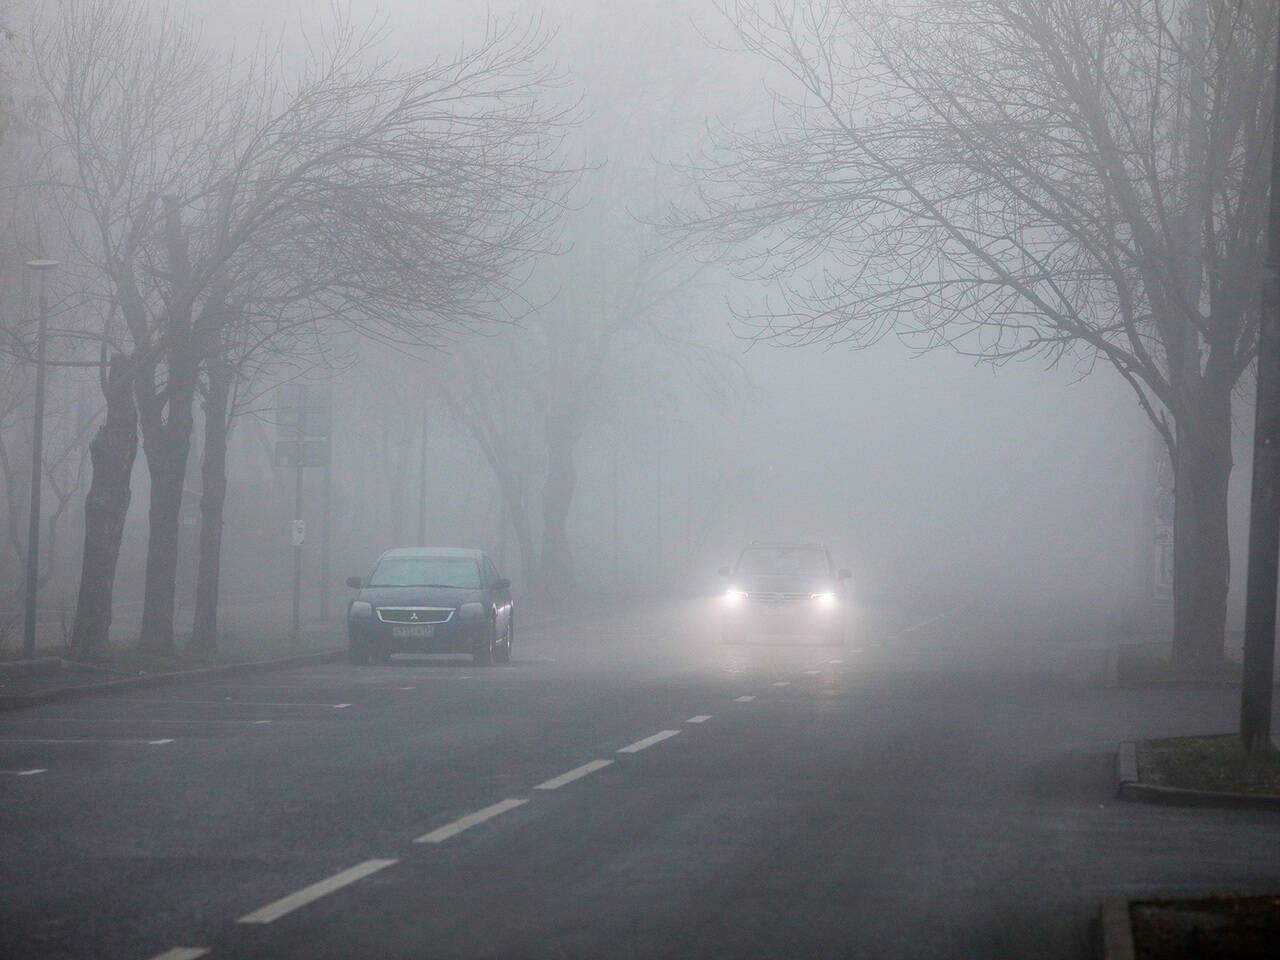 Госавтоинспекция предупреждает об ухудшении видимости на дорогах из-за тумана